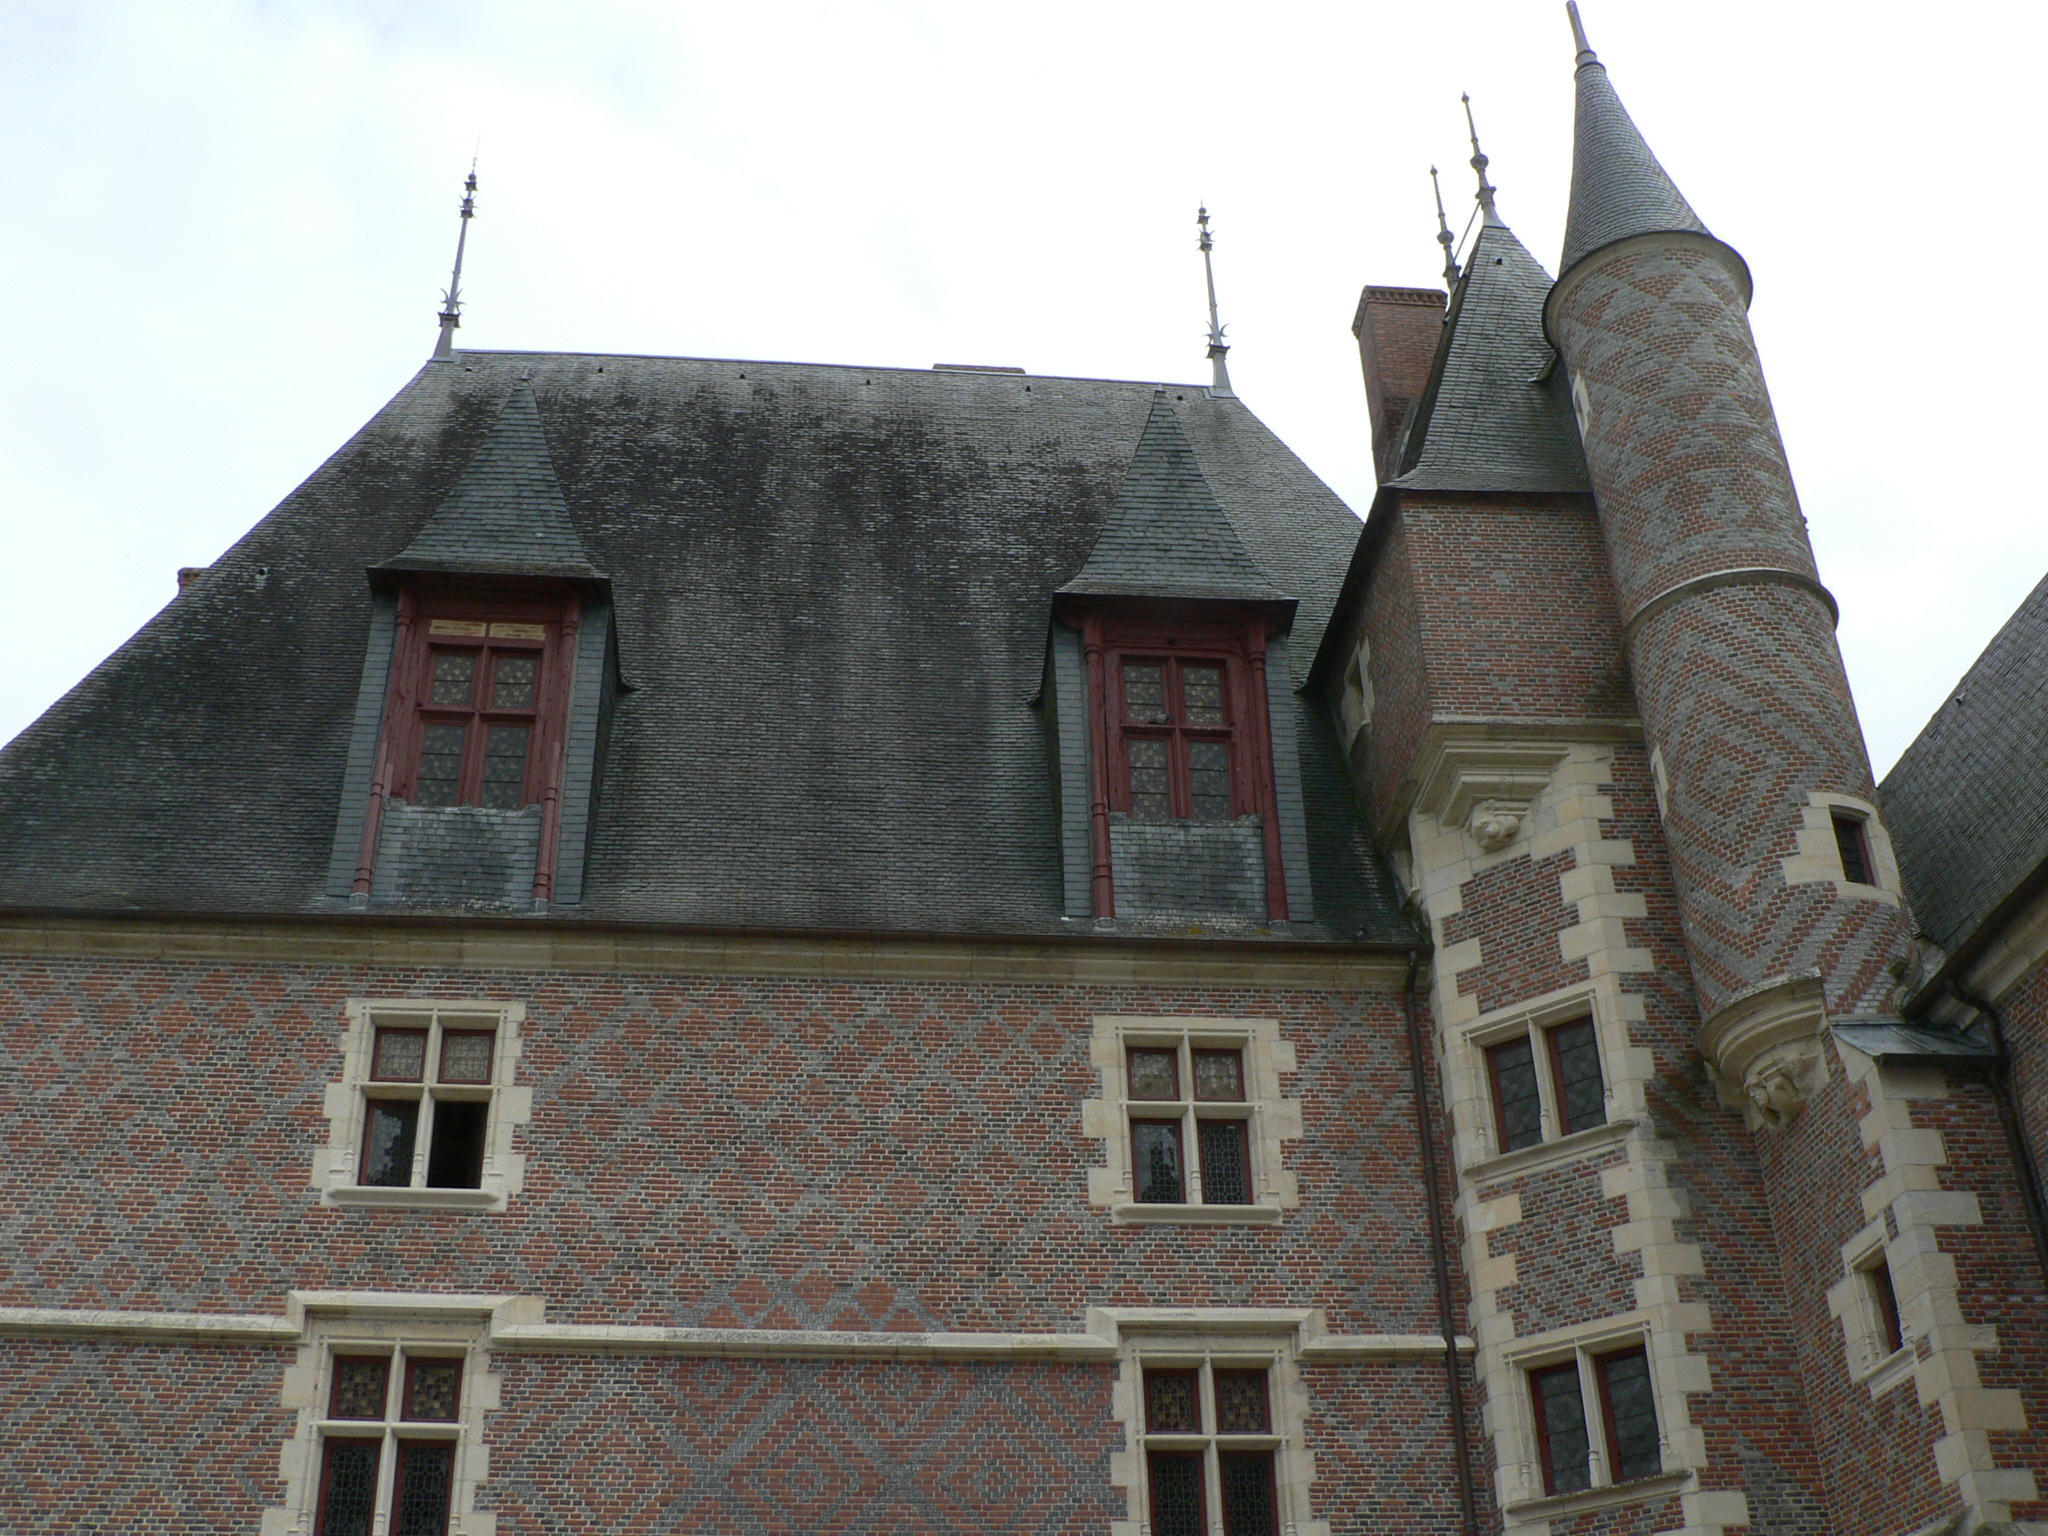 Vue en contre plongée du chateau de La Charité sur Loire (Renaissance)